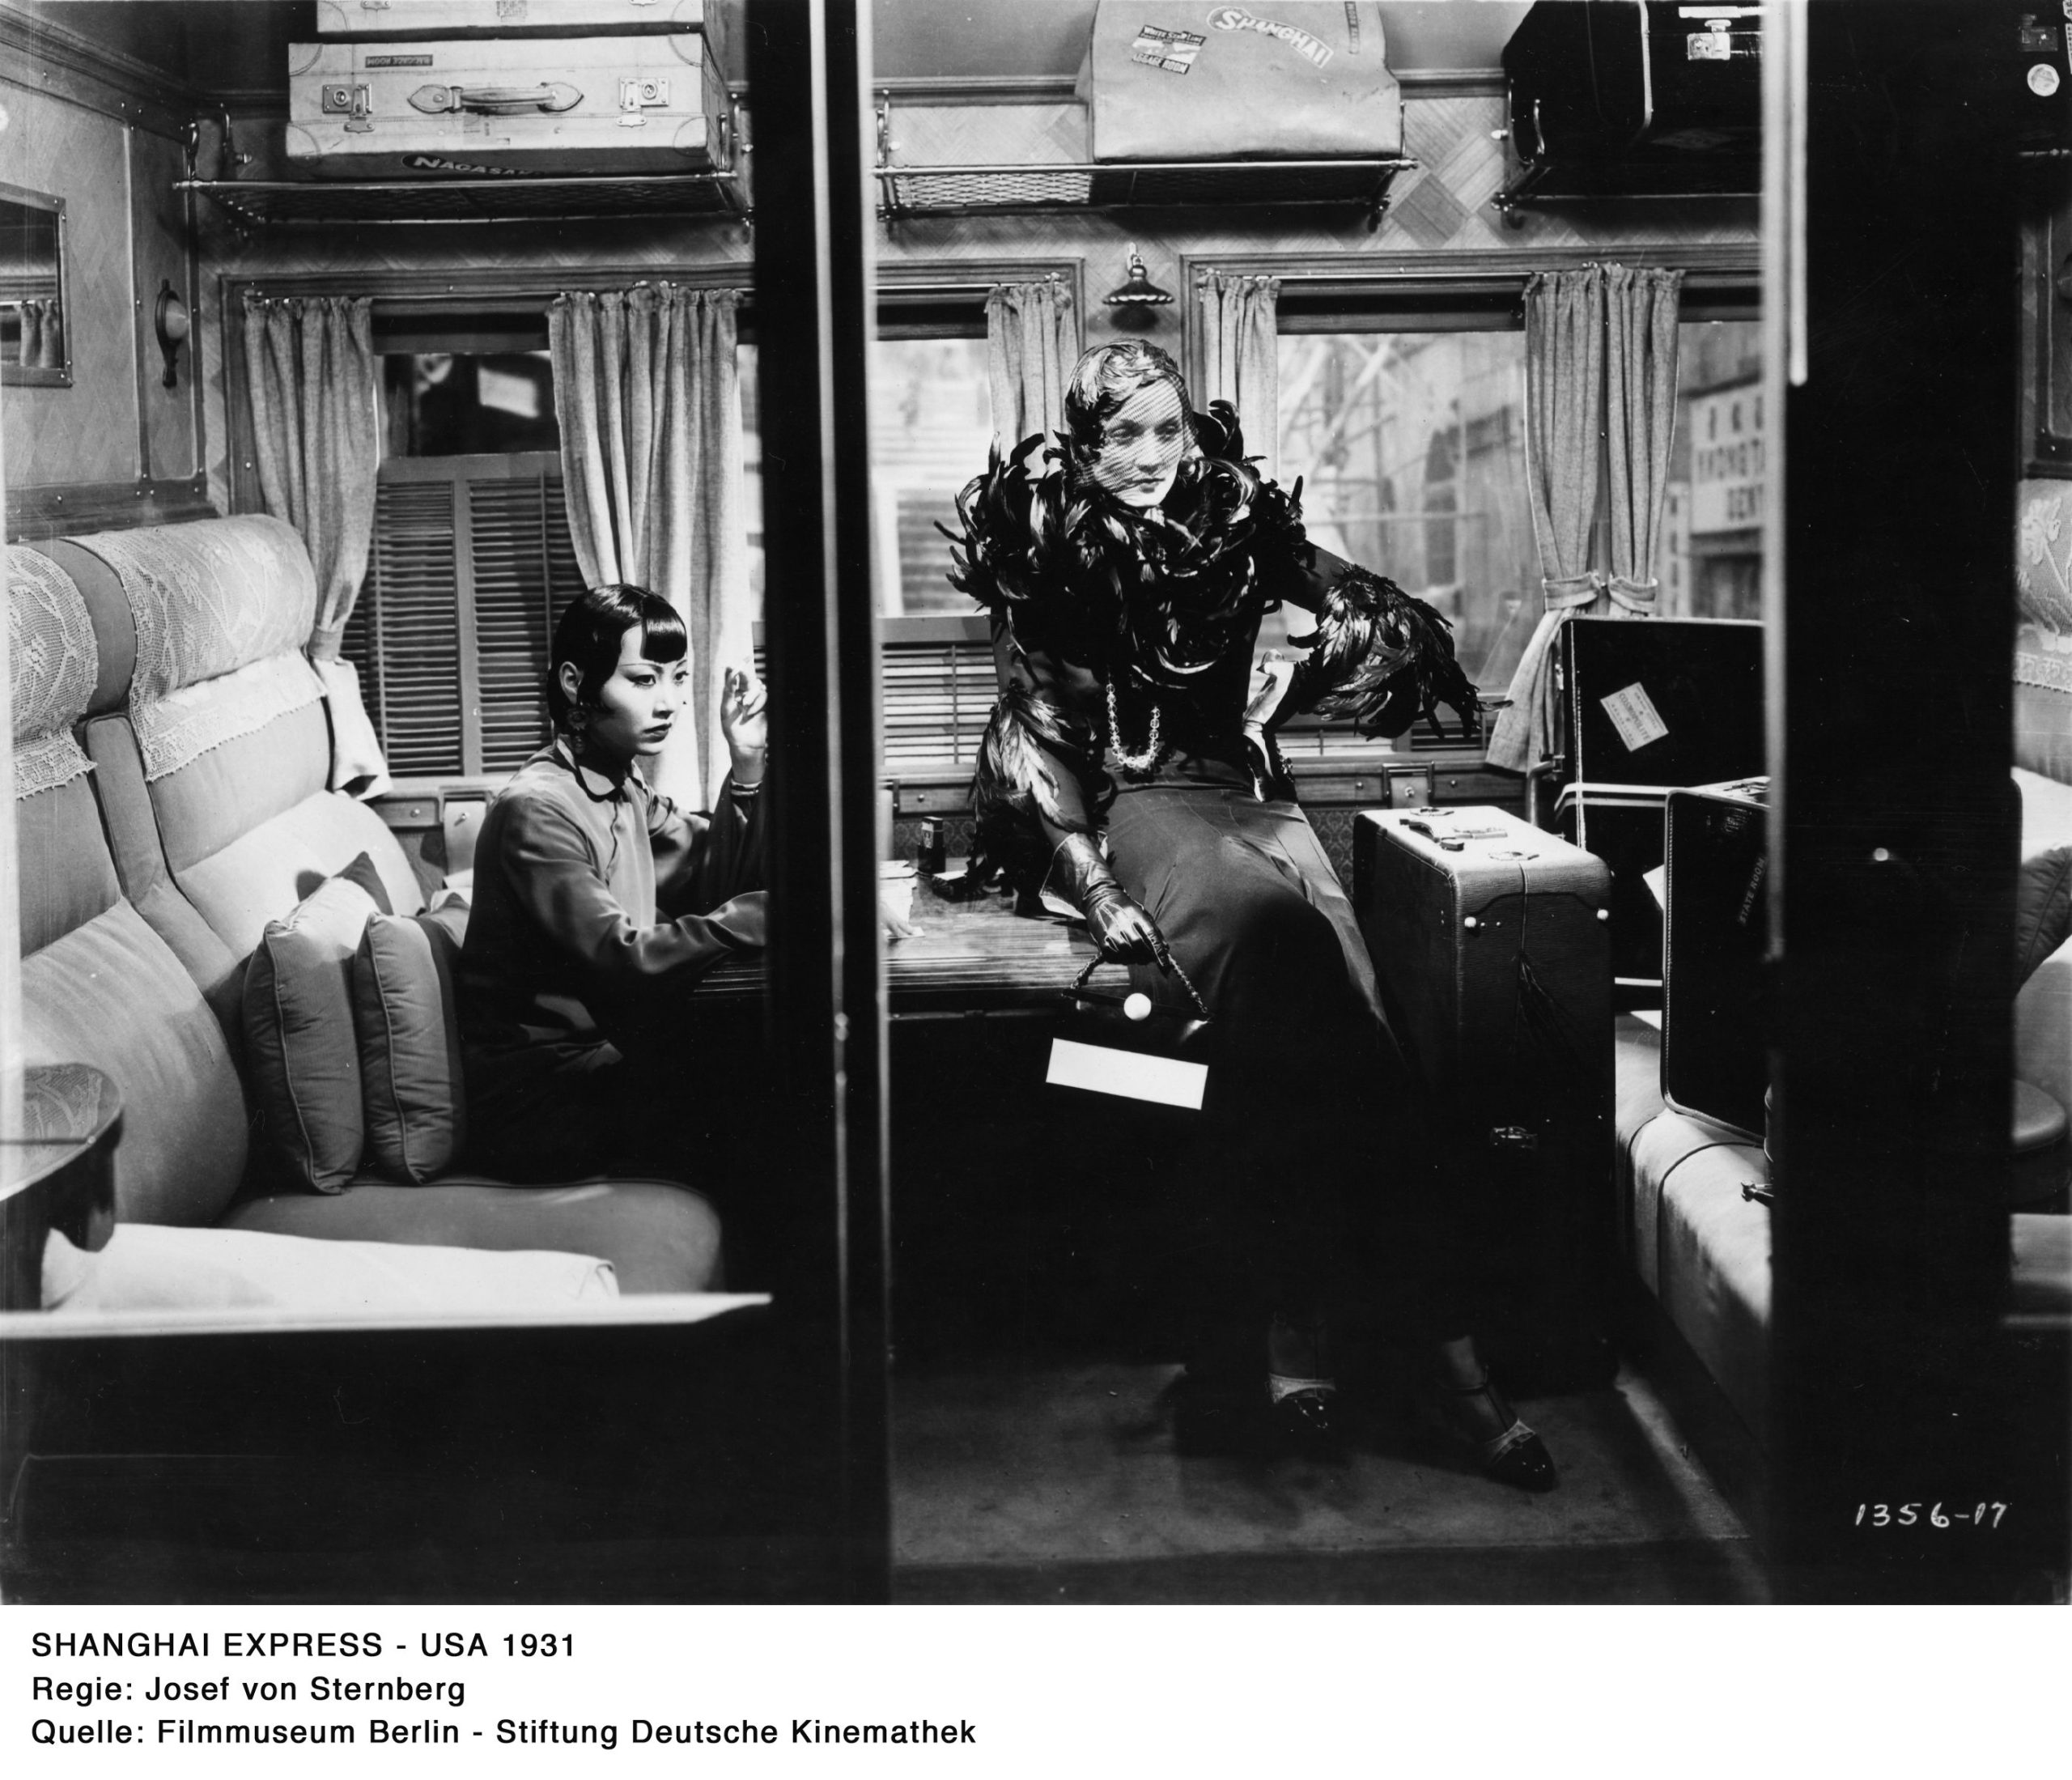 Ein schwarz-weiß Filmausschnitt aus dem Film “Shanghai Express”. Anna May Wong sitzt links auf einem Sitzplatz in einem Zugabteil. Eine weiße Frau in eleganter Kleidung lehnt an einem Tisch, rechts daneben ist ein großer Koffer.